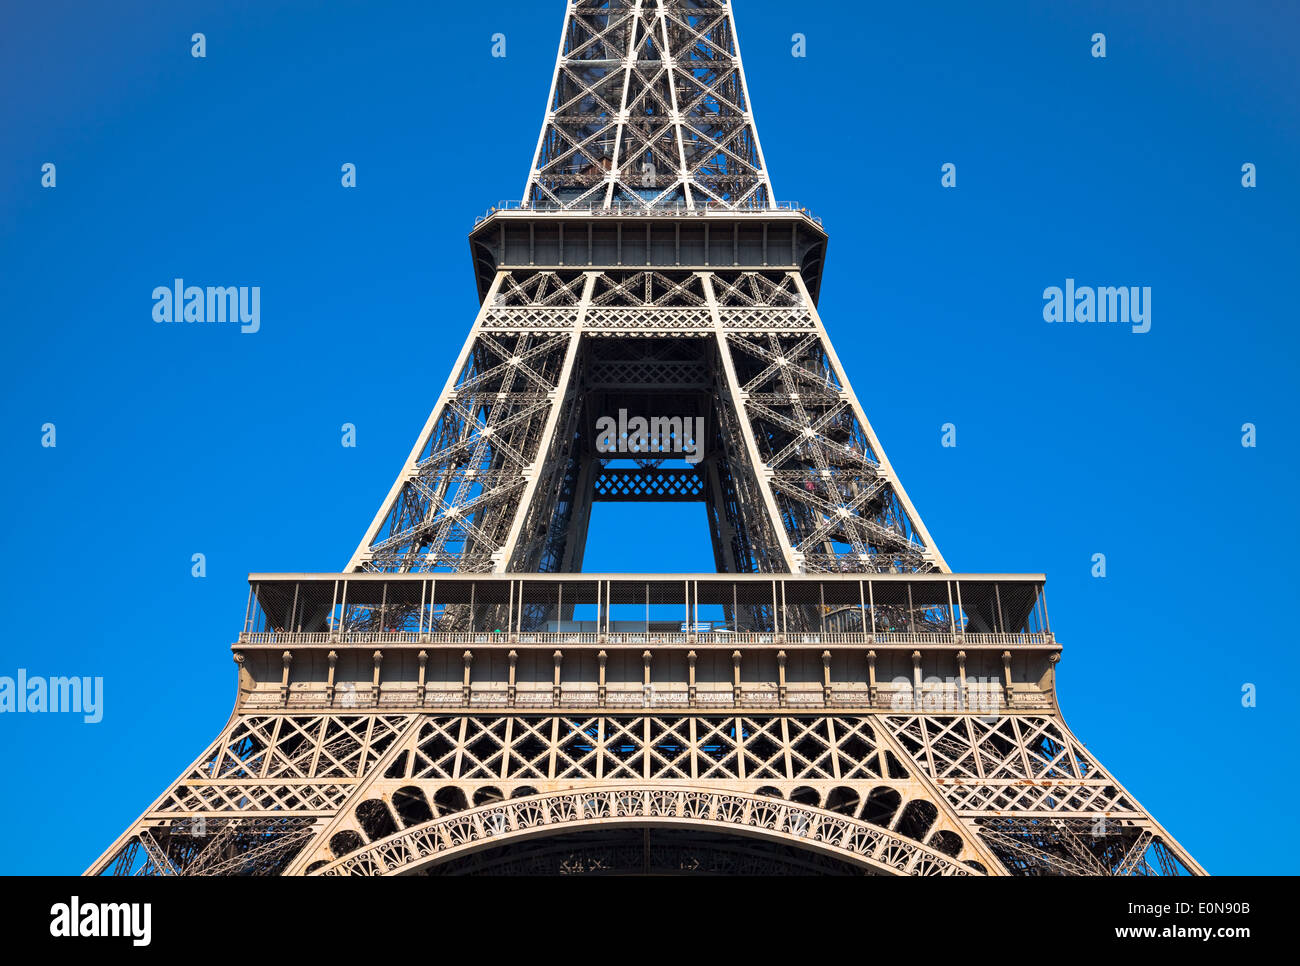 Eiffelturm, Paris, Frankreich - Eiffel Tower, Paris, France Stock Photo